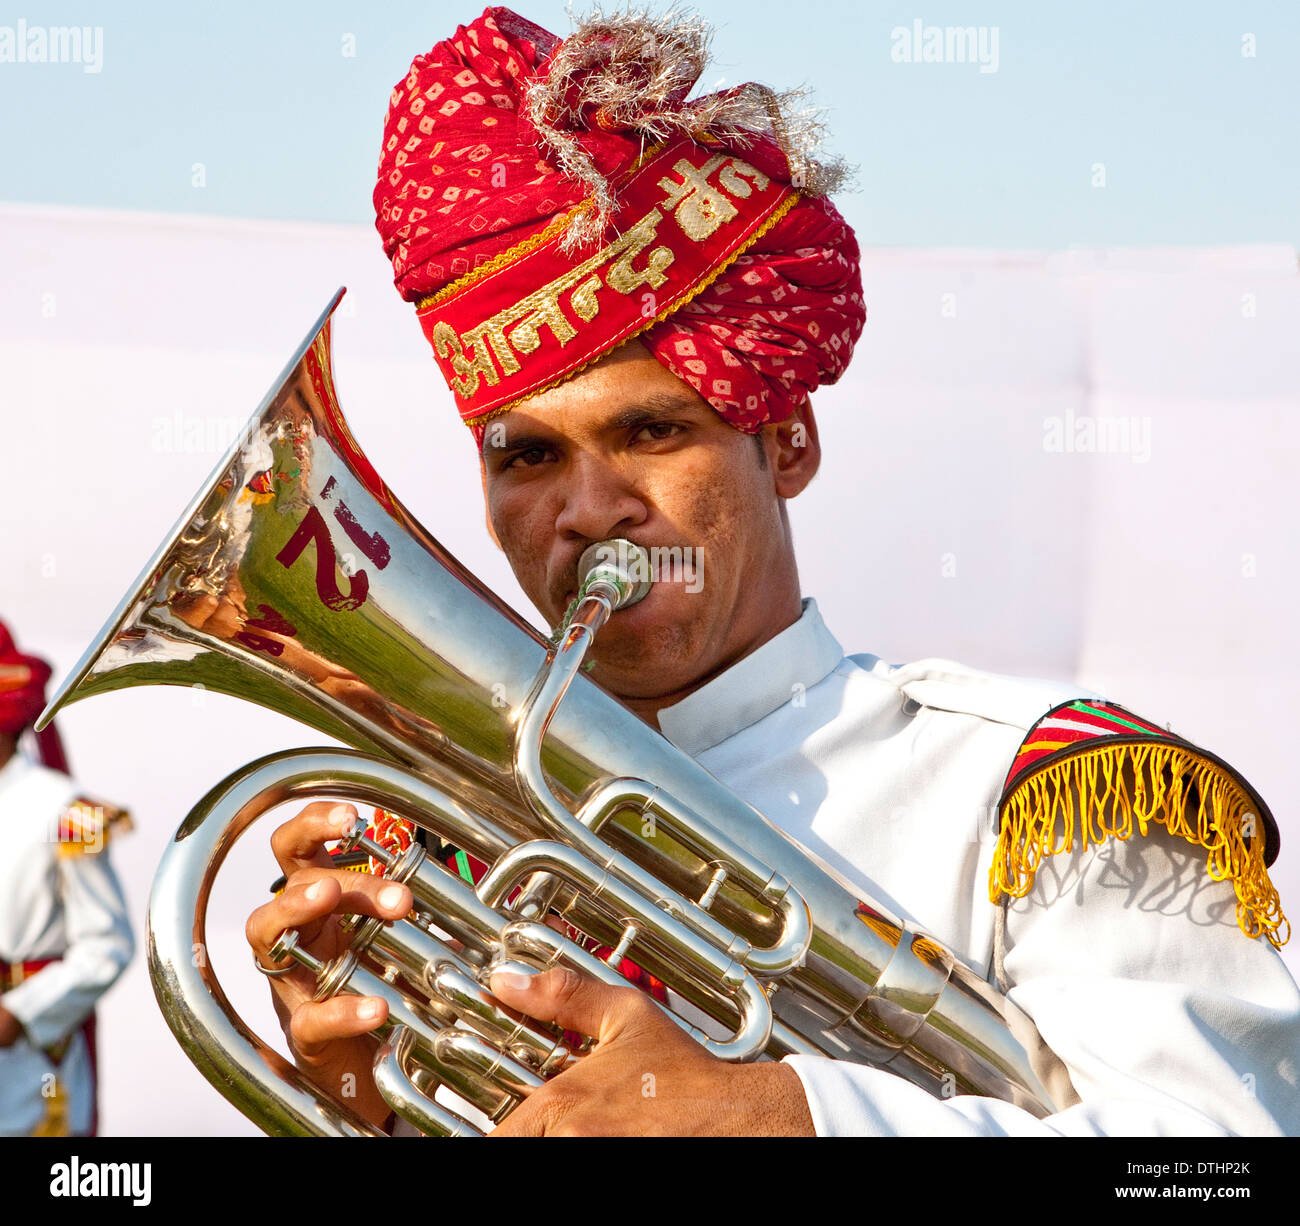 Jeune homme jouant dans un groupe au Festival de l'éléphant d'Asie Inde Jaipur Rajashtan Banque D'Images